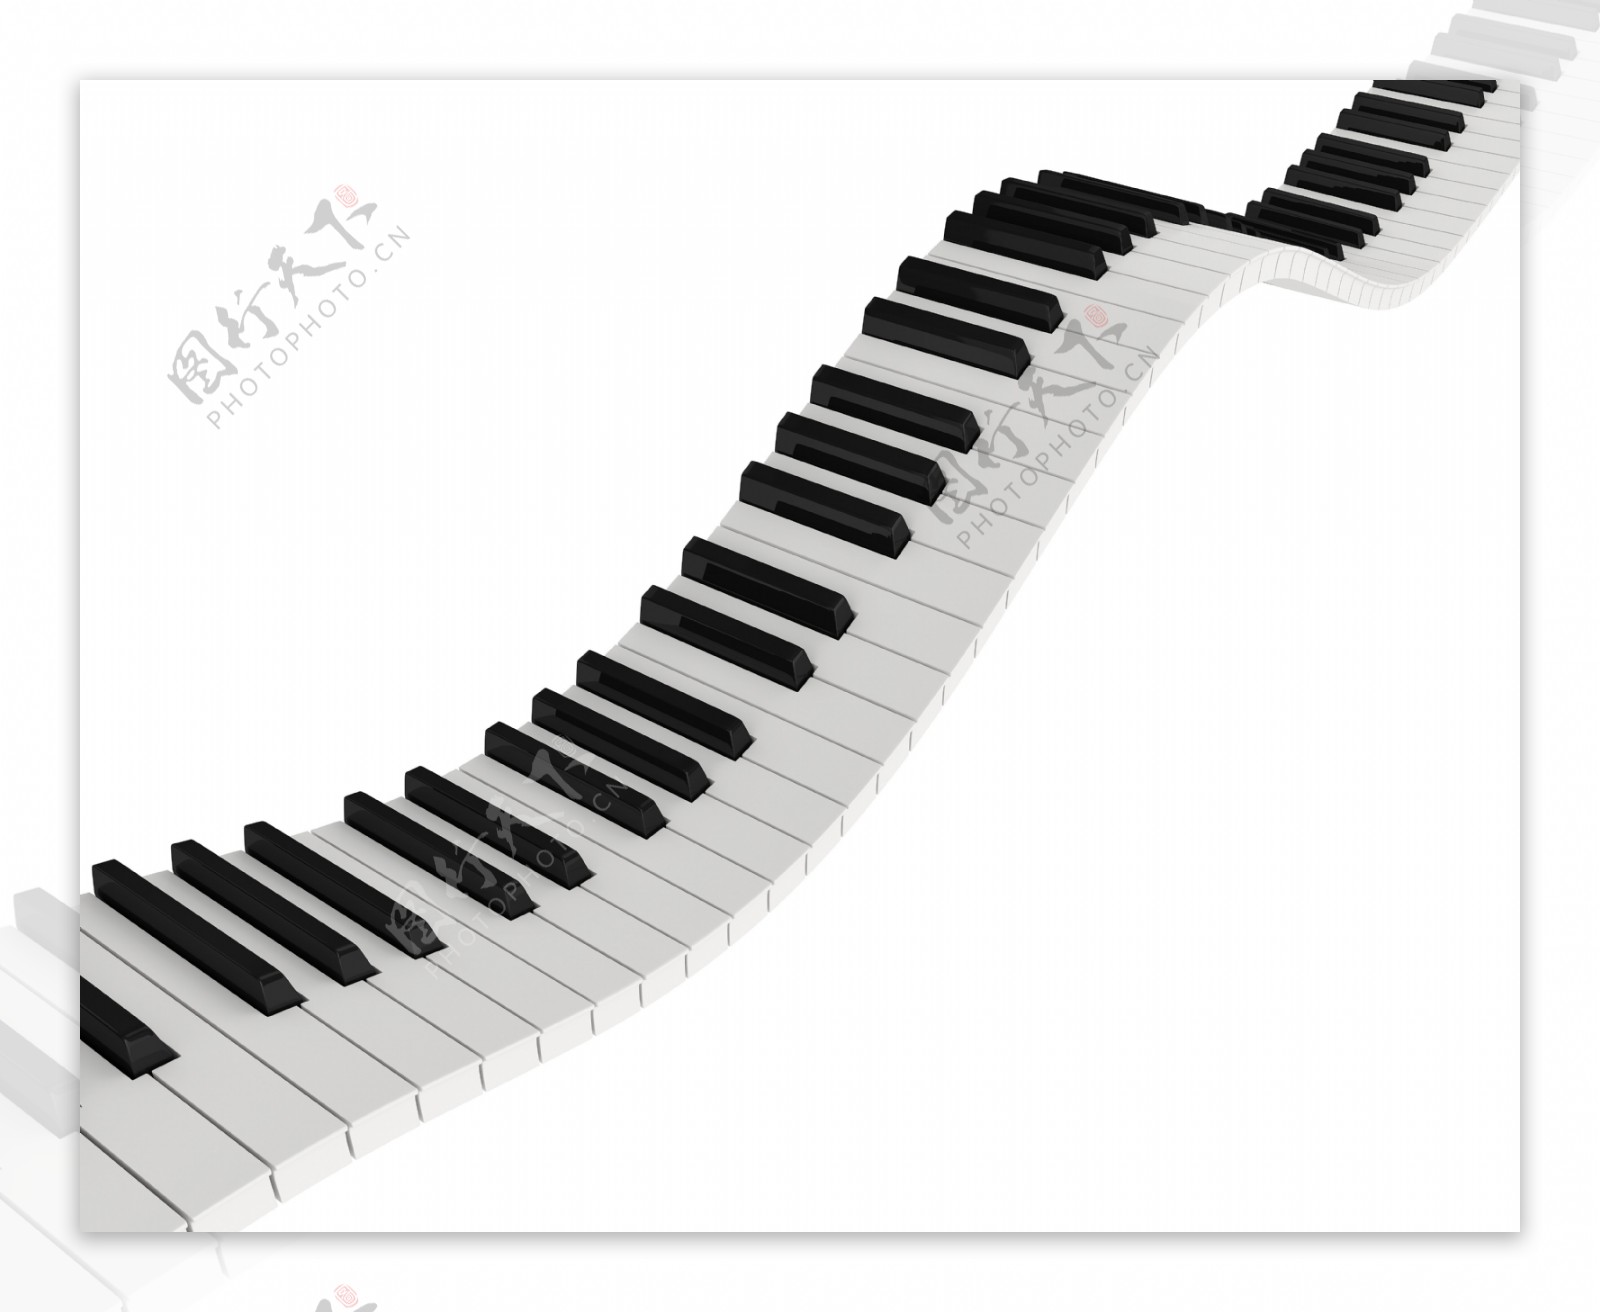 钢琴琴键图片